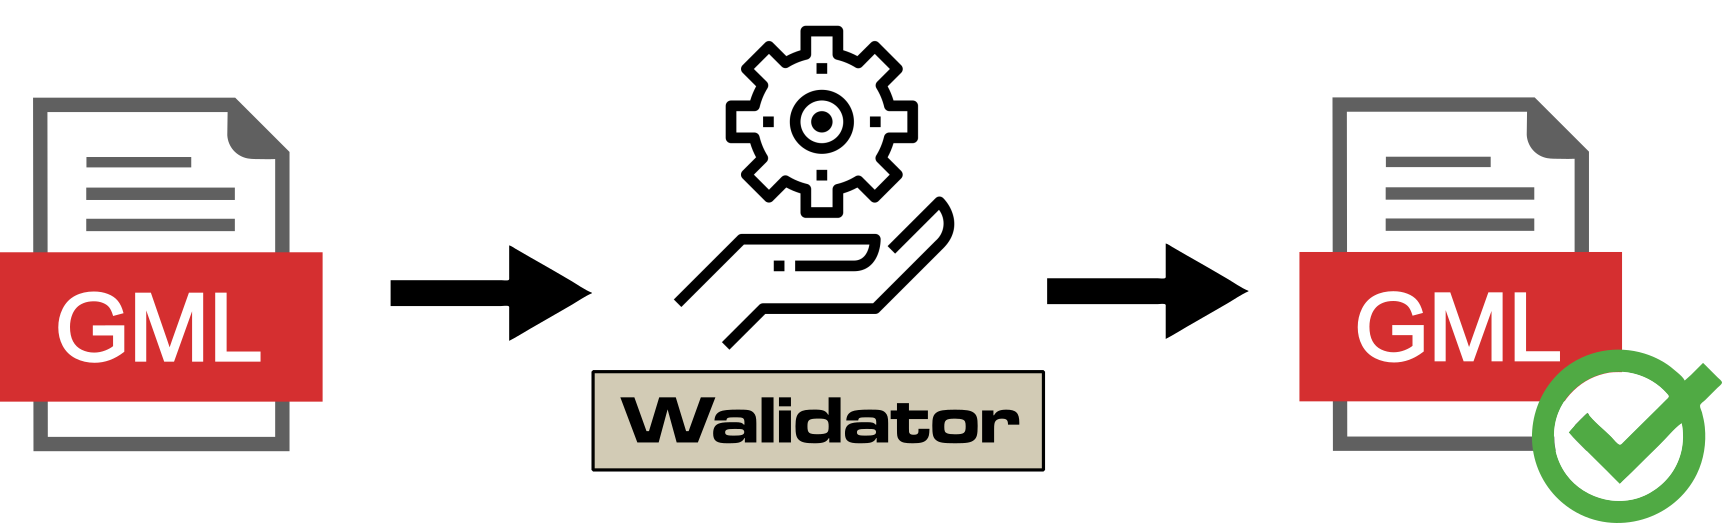 Ilustracja pokazuje wizualizację pliku GML, strzałkę z napisem "Walidator" oraz plik GML oznaczony, jako poprawny.